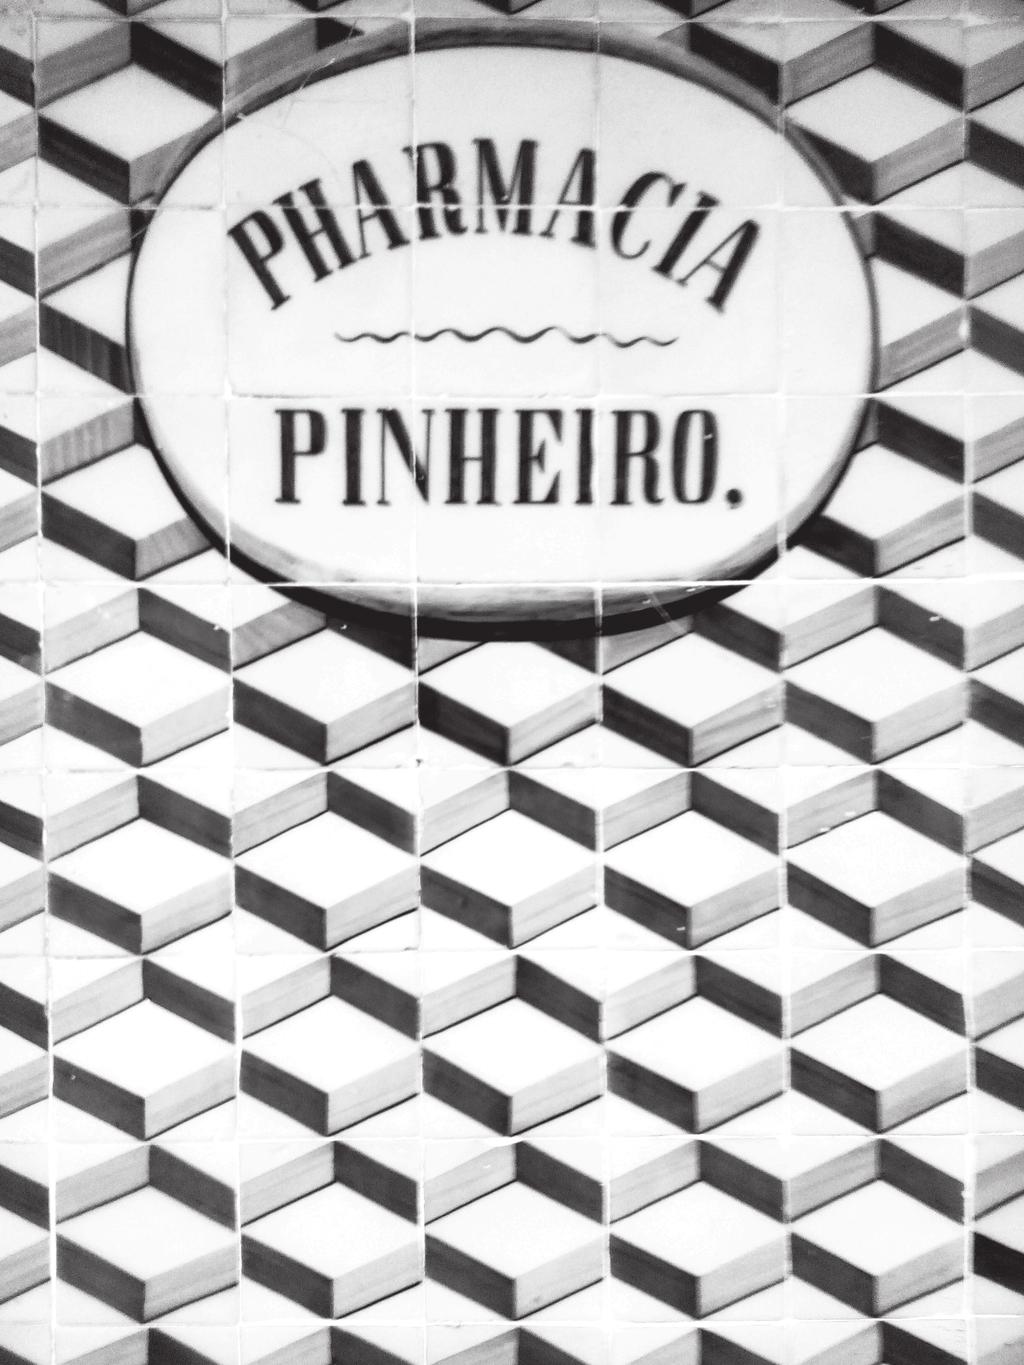 17. A Figura 8 é uma fotografia de um painel de azulejos que se encontra na fachada da Farmácia Pinheiro, em Tomar.